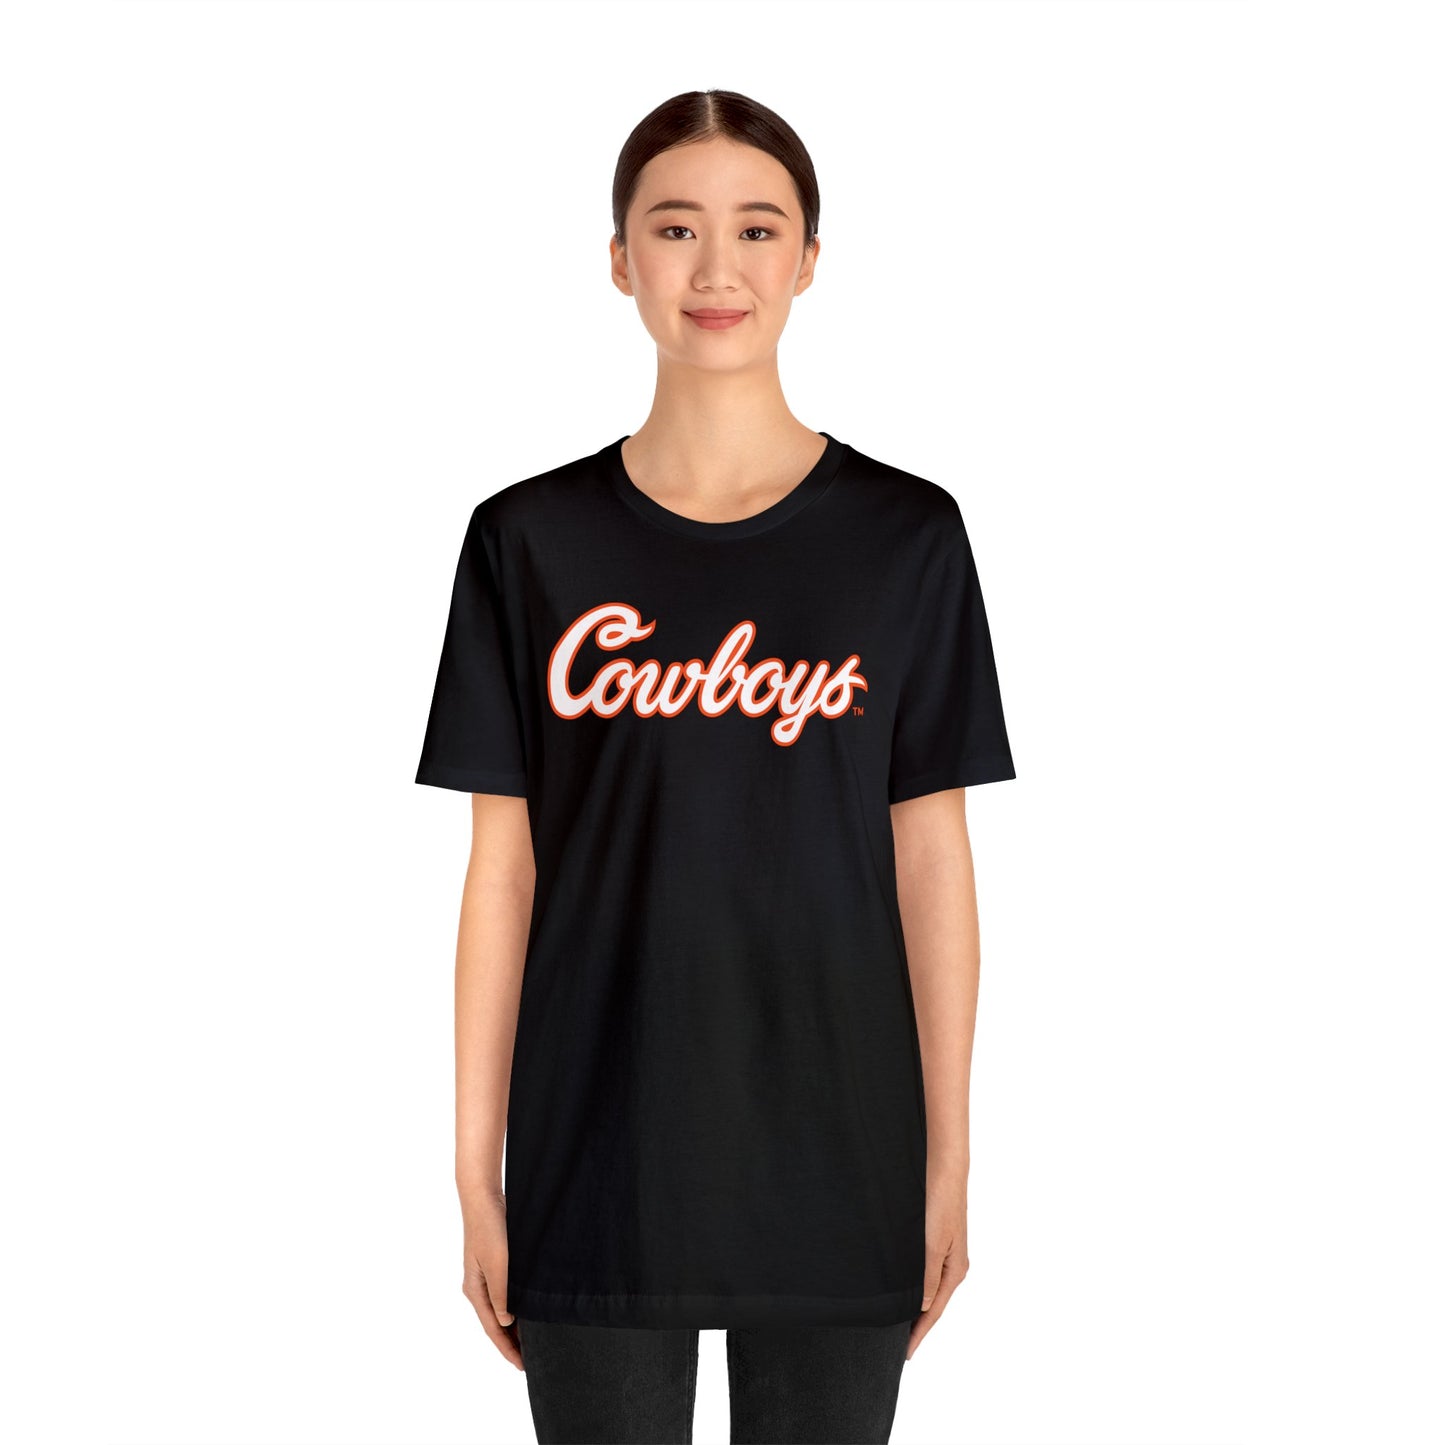 Cole Birmingham #67 Cursive Cowboys T-Shirt